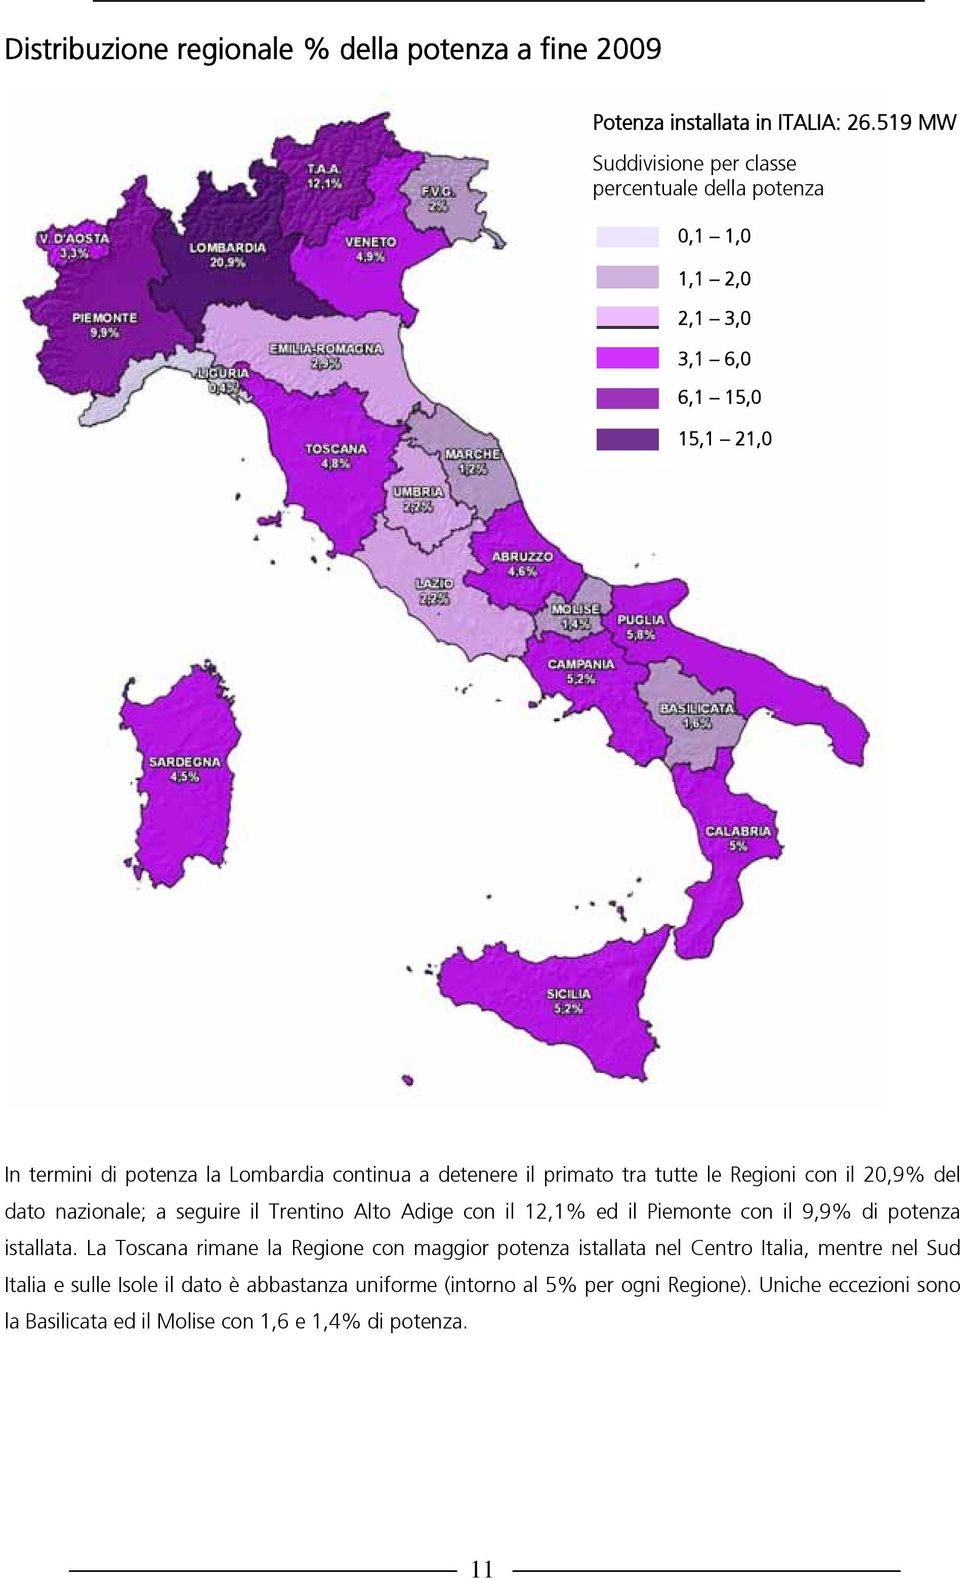 primato tra tutte le Regioni con il 20,9% del dato nazionale; a seguire il Trentino Alto Adige con il 12,1% ed il Piemonte con il 9,9% di potenza istallata.